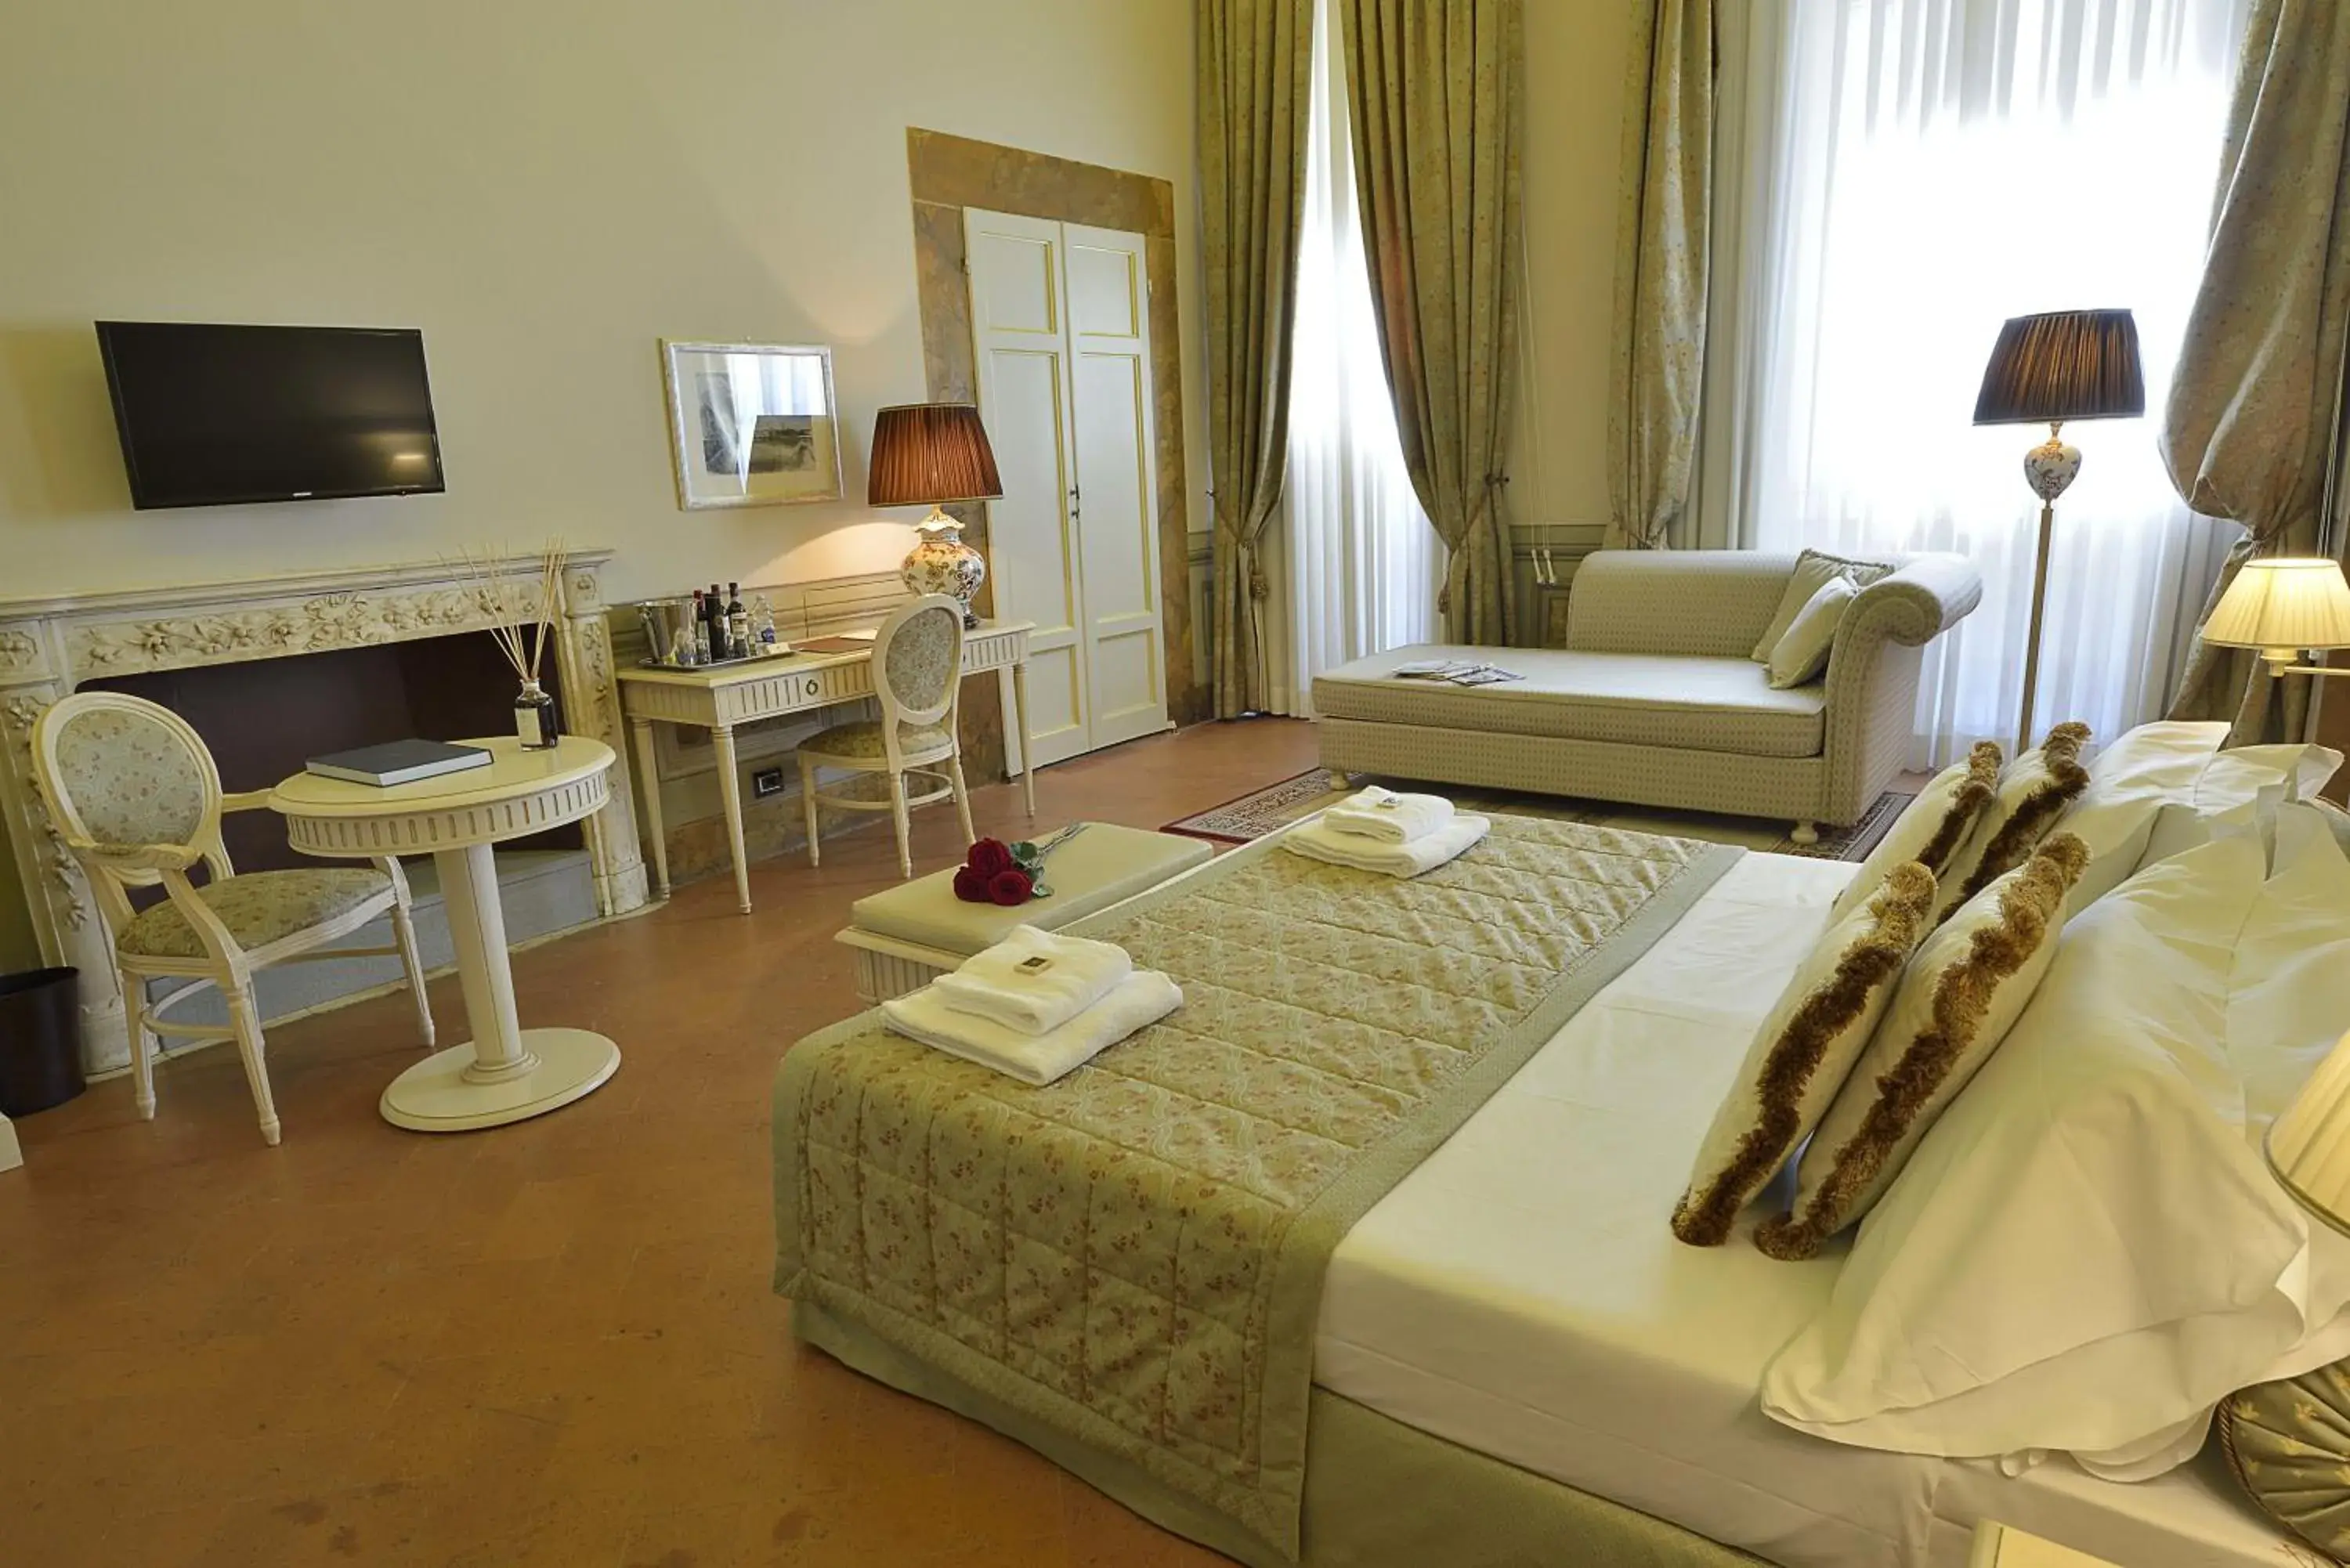 Bedroom, TV/Entertainment Center in Palazzo Guicciardini